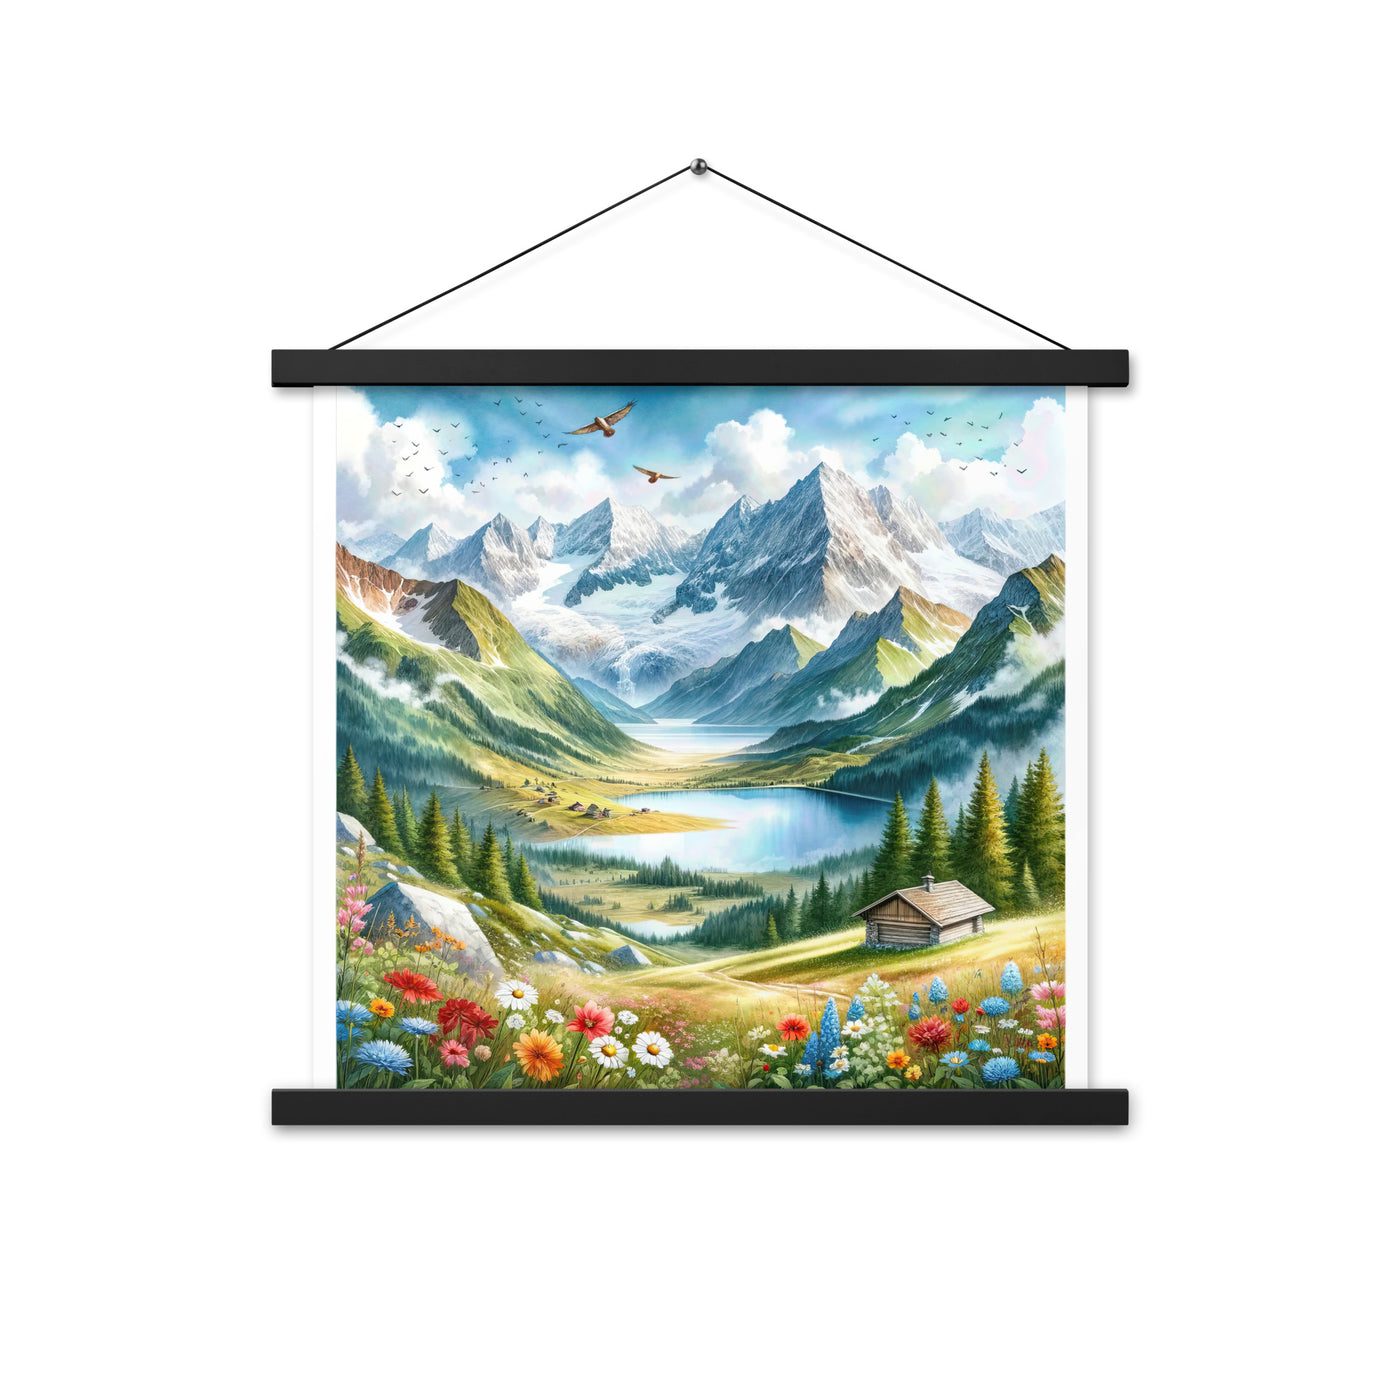 Quadratisches Aquarell der Alpen, Berge mit schneebedeckten Spitzen - Premium Poster mit Aufhängung berge xxx yyy zzz 45.7 x 45.7 cm